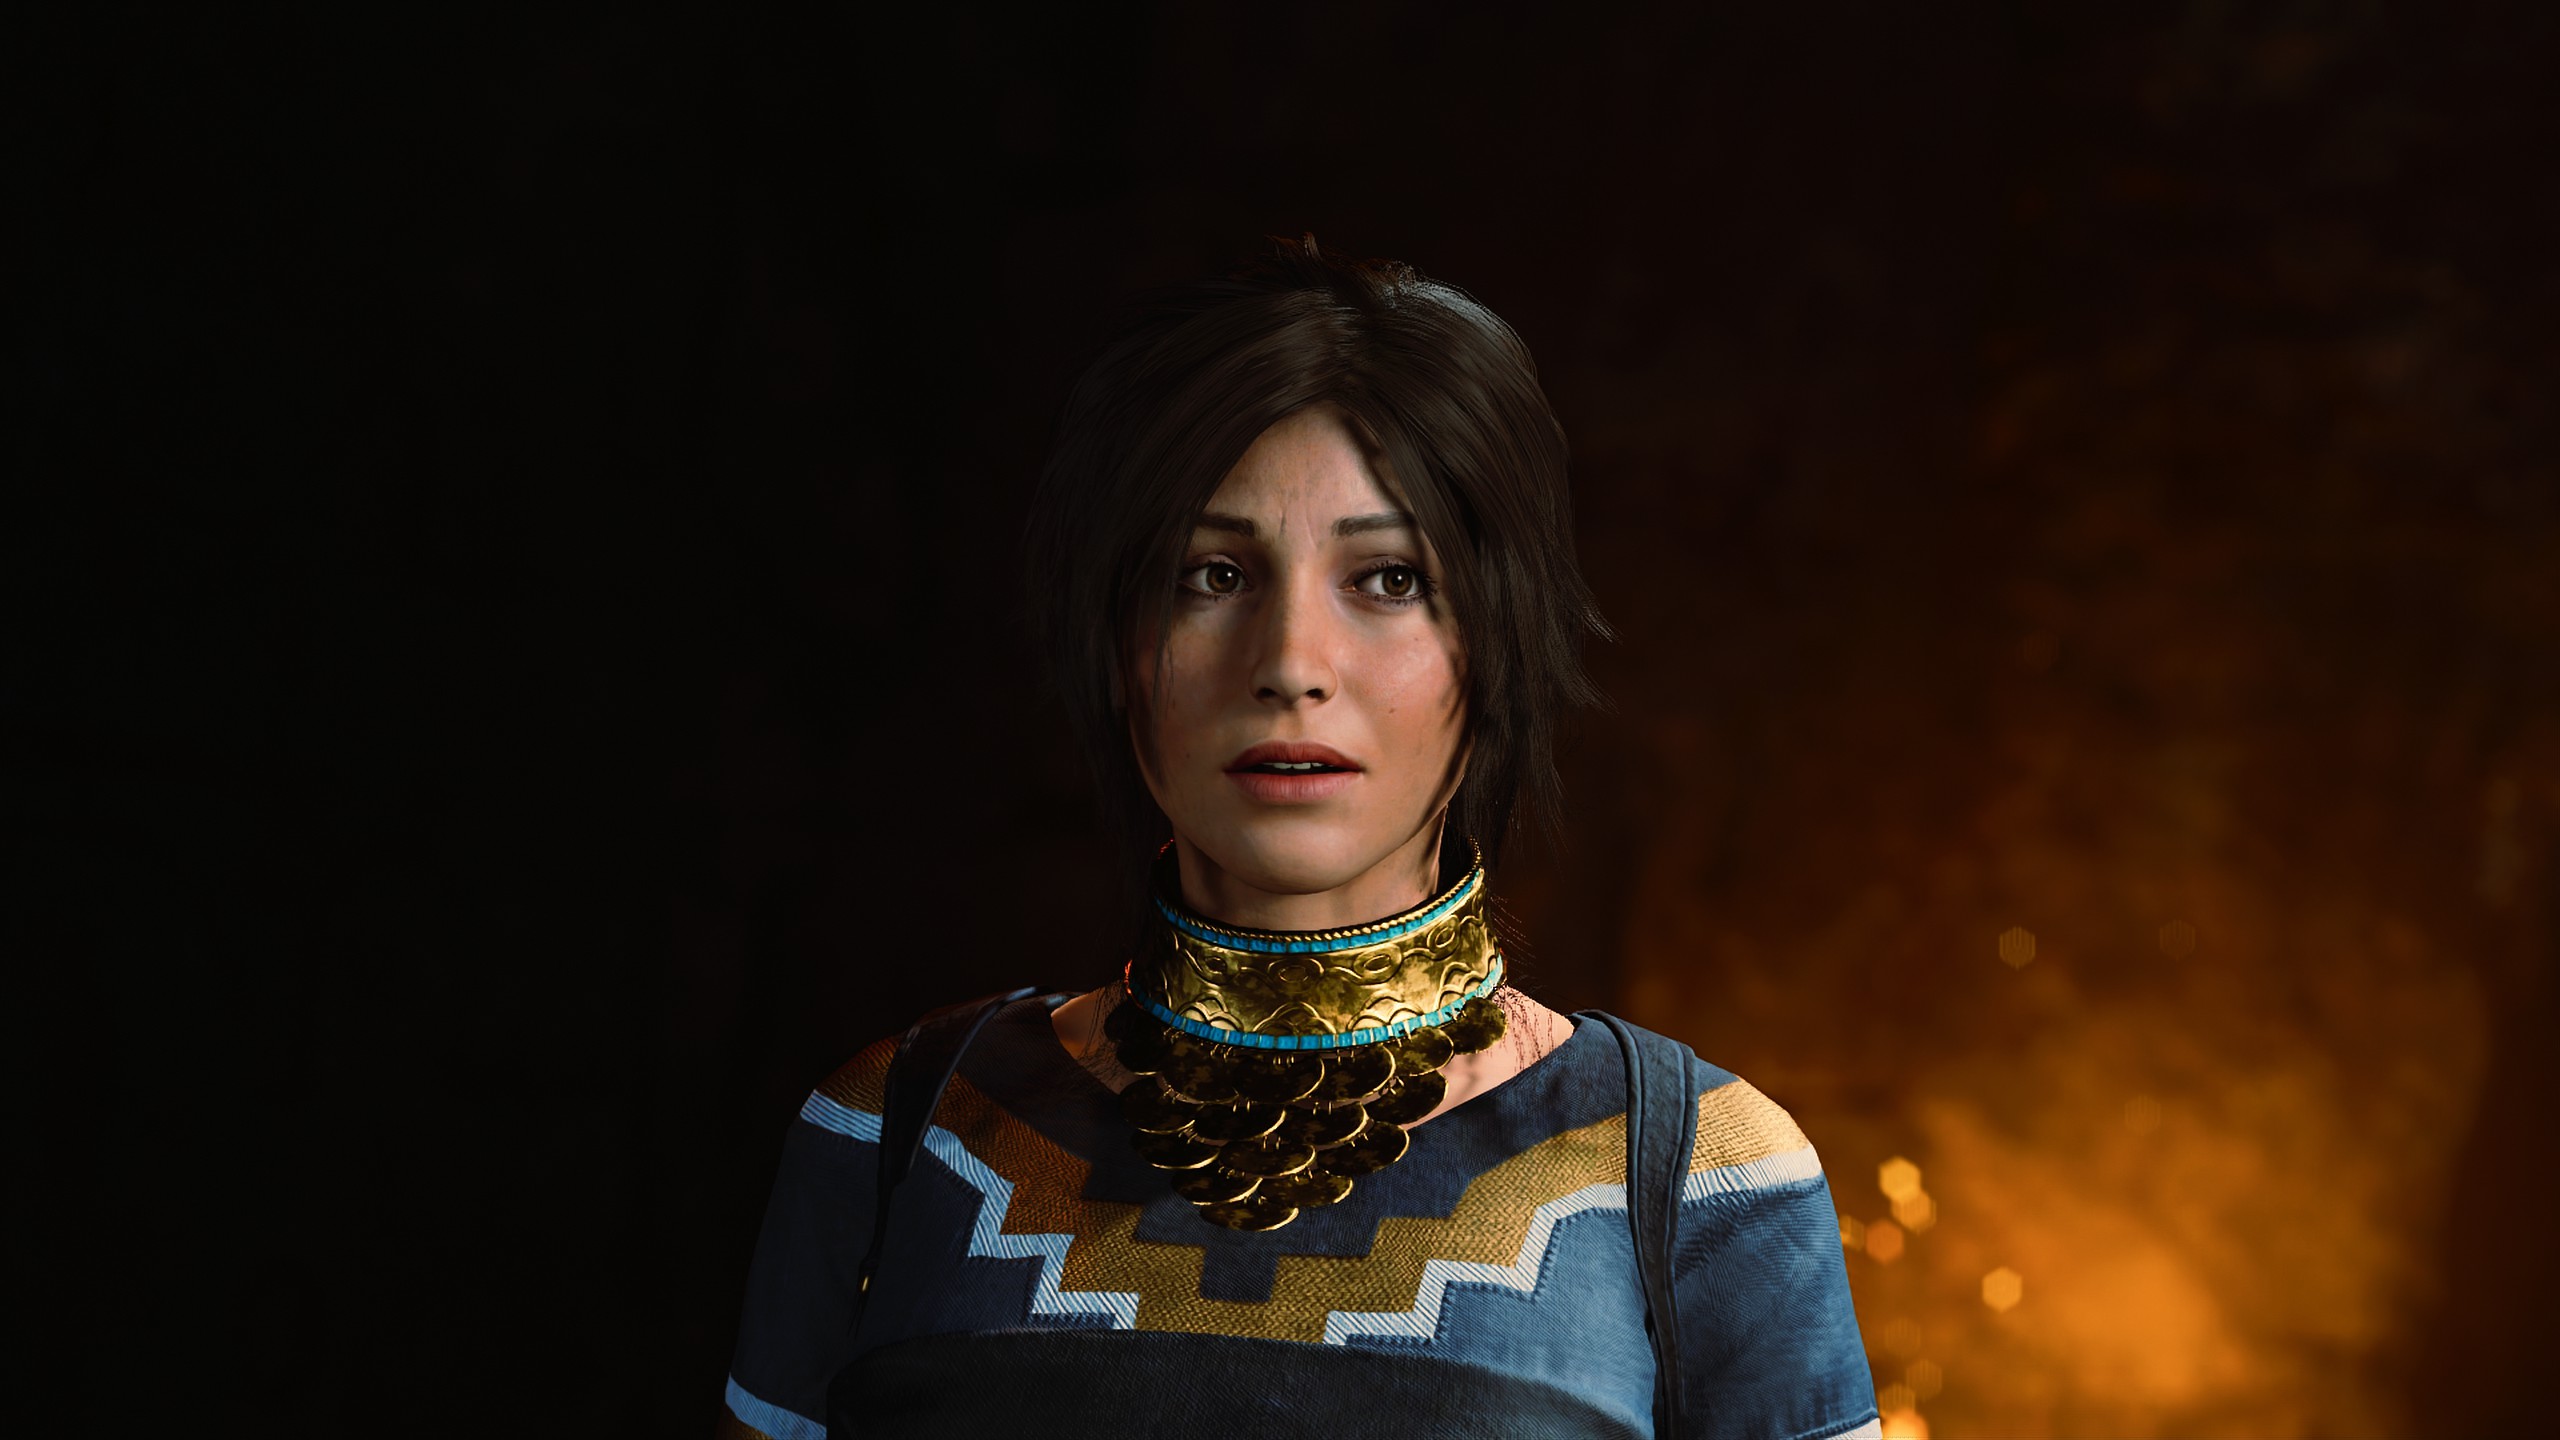 Téléchargez gratuitement l'image Tomb Raider, Jeux Vidéo, Lara Croft, Shadow Of The Tomb Raider sur le bureau de votre PC